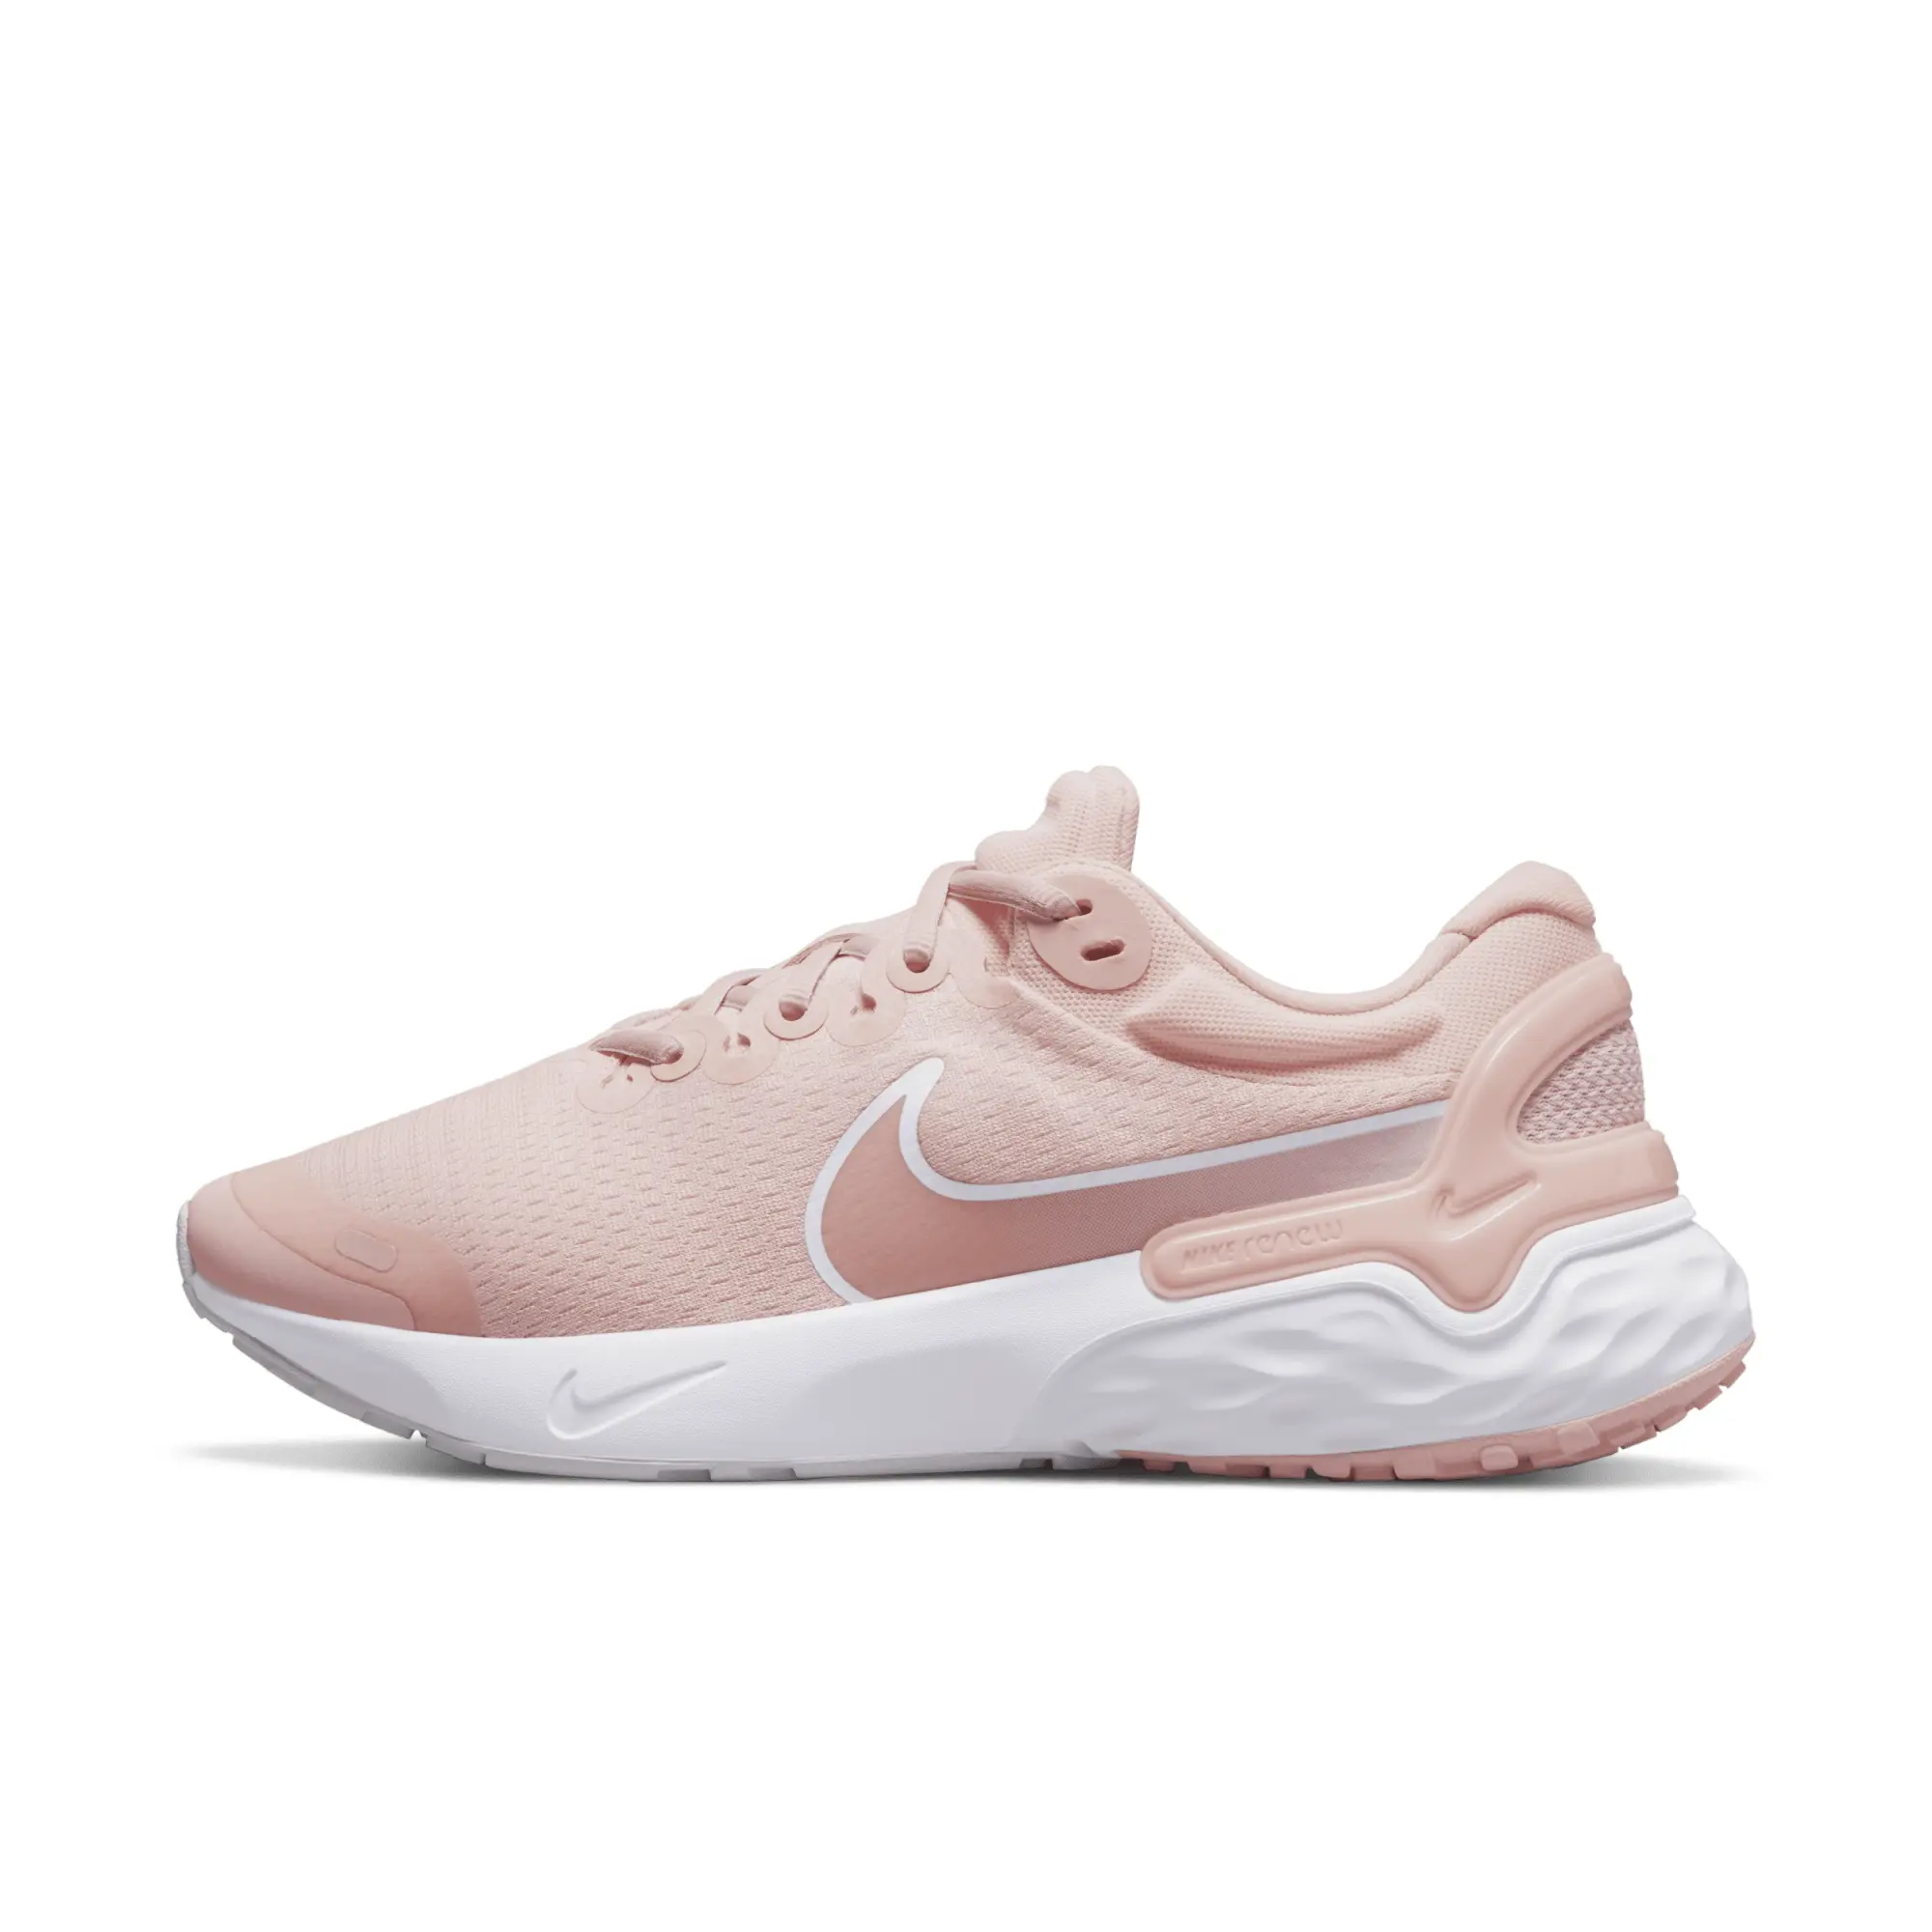 Nike Renew Run 3 Women's Road Running Shoes - Pink